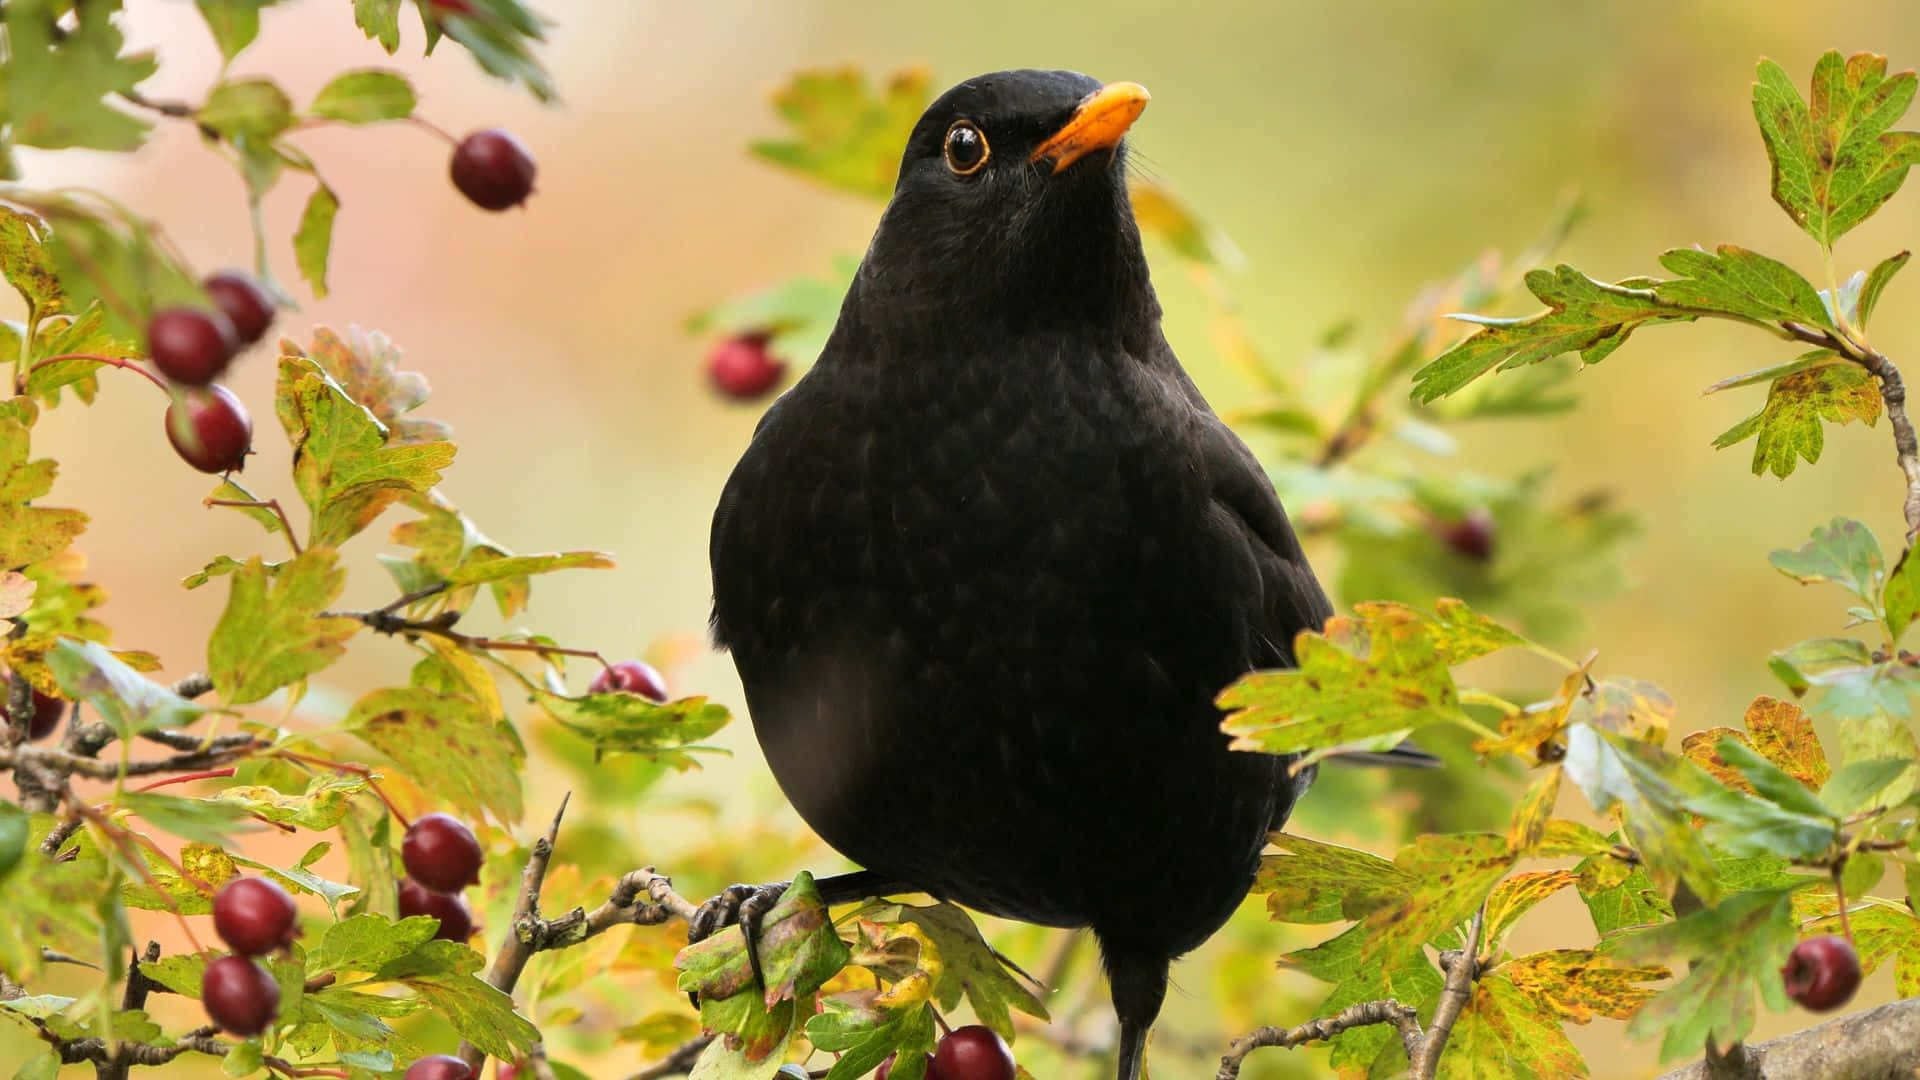 Blackbird Perchedin Autumn Berries Wallpaper